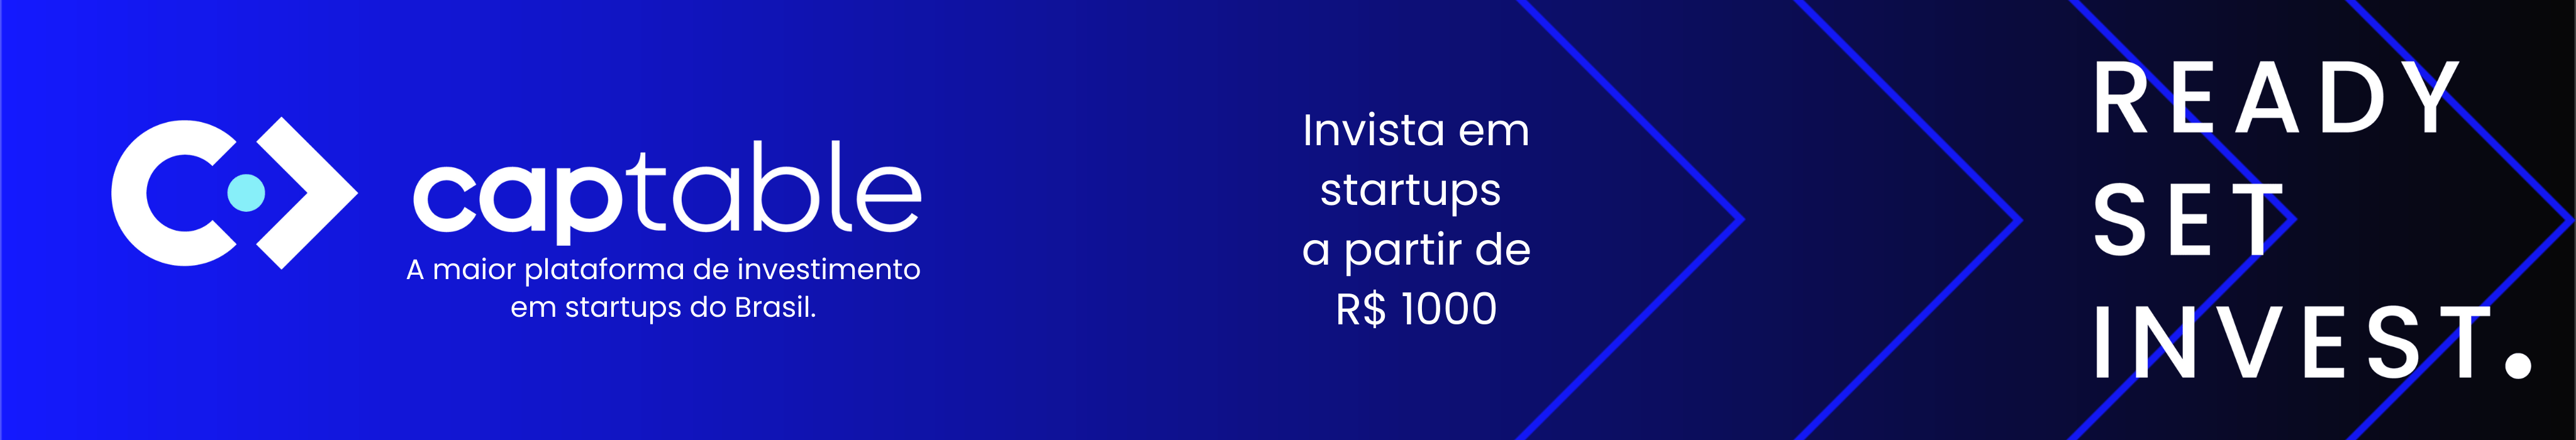 Captable – a maior plataforma de investimento em startups do Brasil